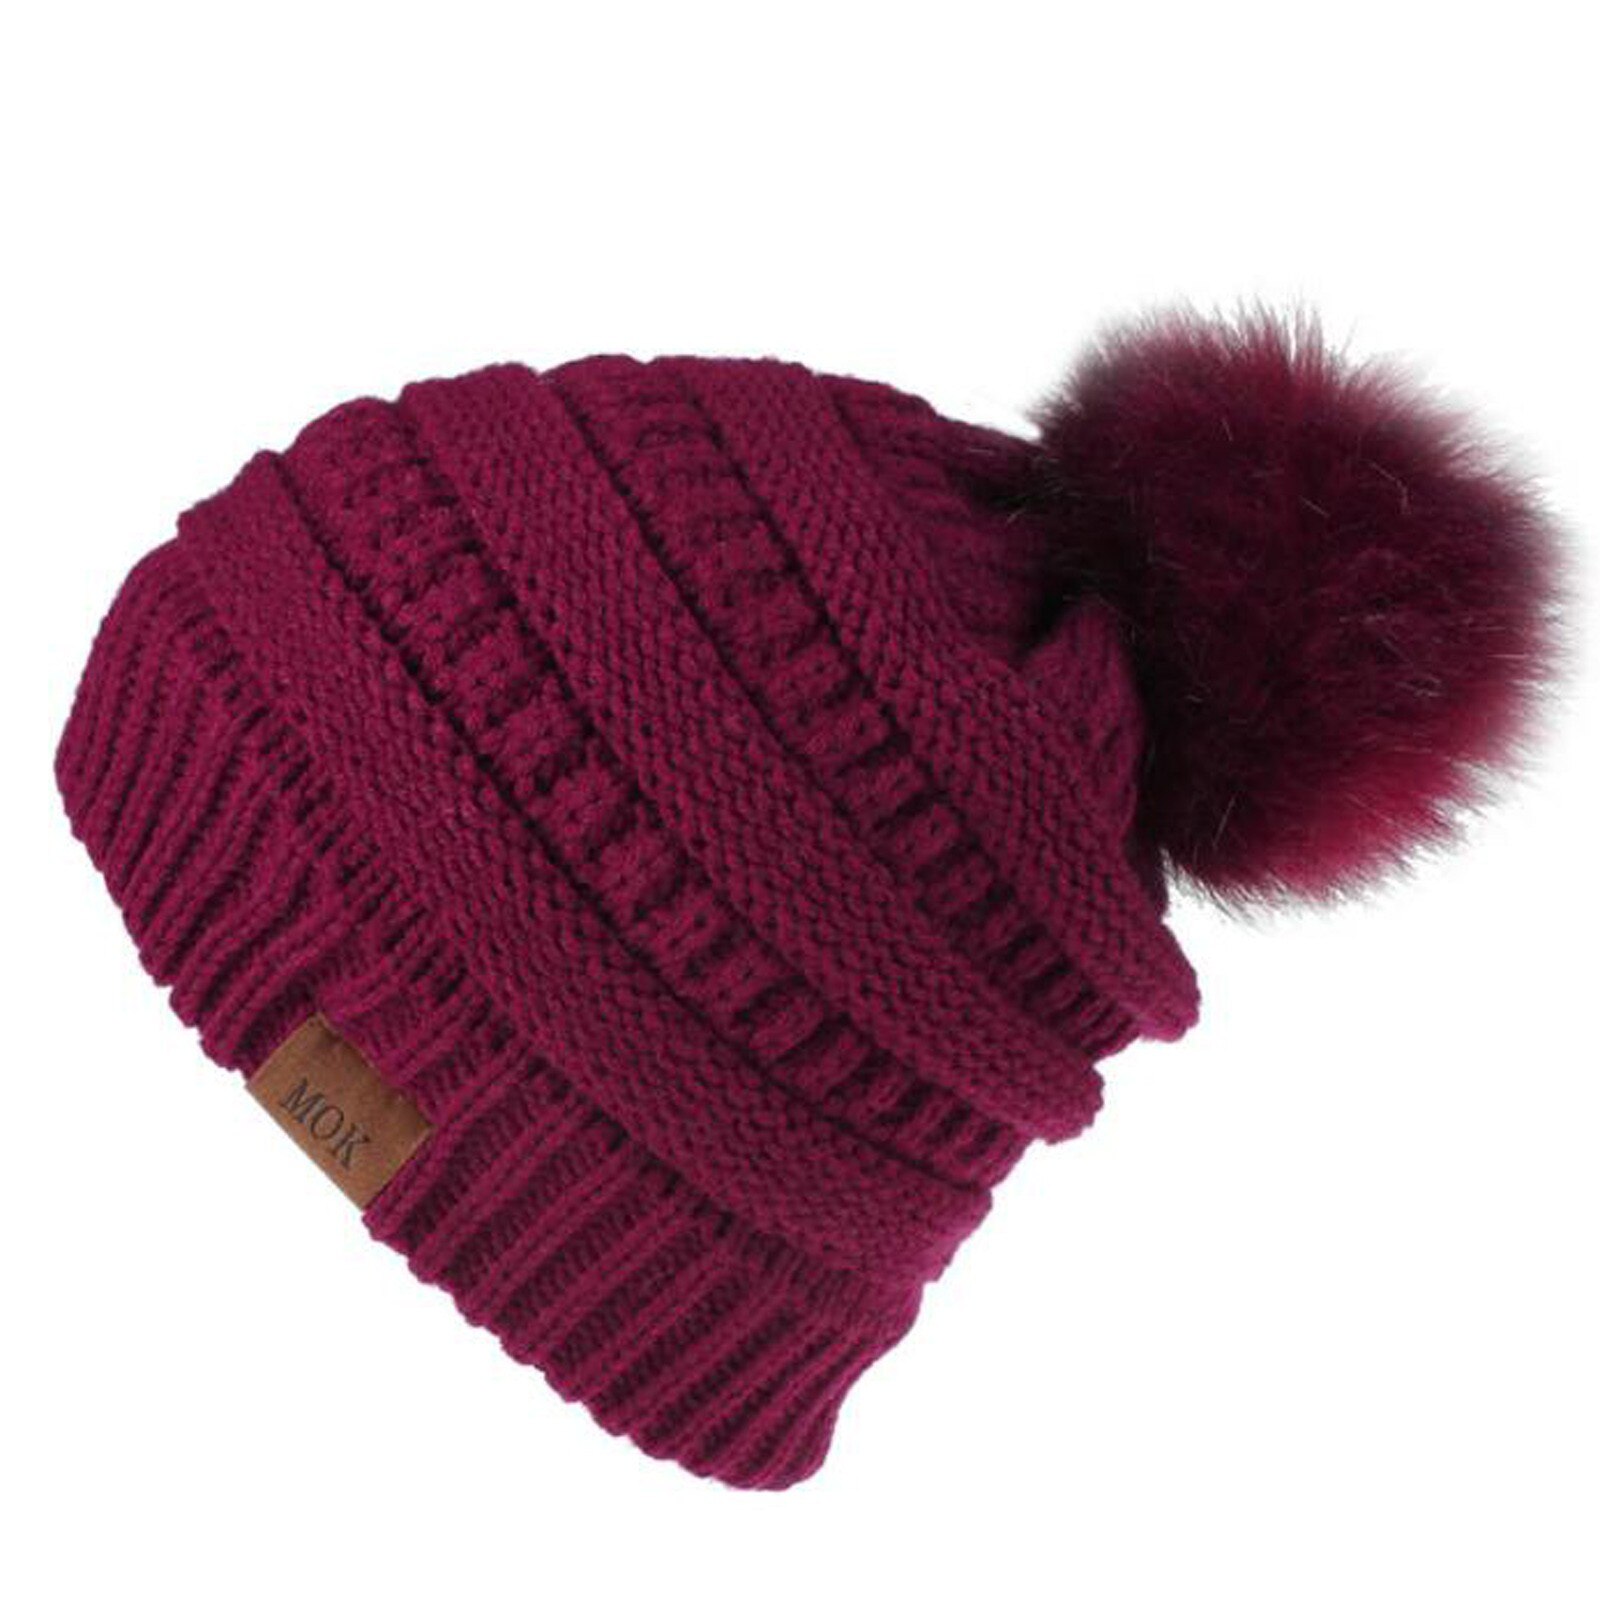 E la moda donna nuova E di alta qualità mantiene caldi cappelli invernali cappello a orlo in lana lavorato a maglia morbido delicato sulla pelle, traspirante: WE